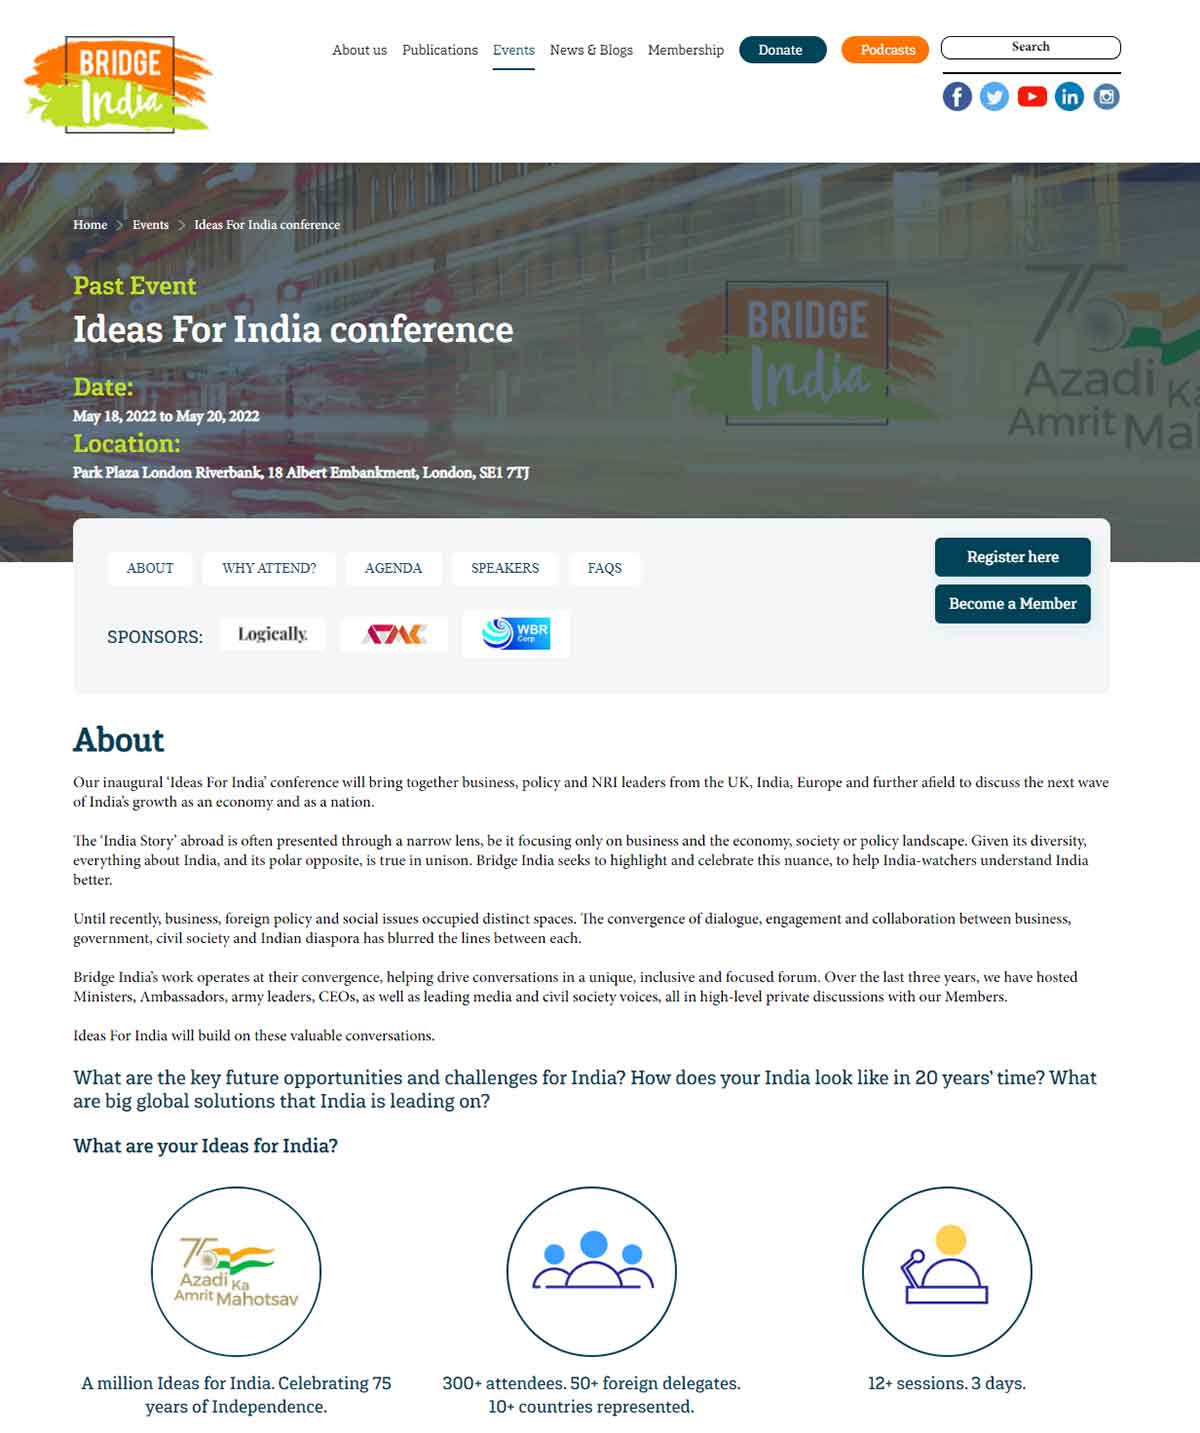 Event page of Bridge India - Cambridge University